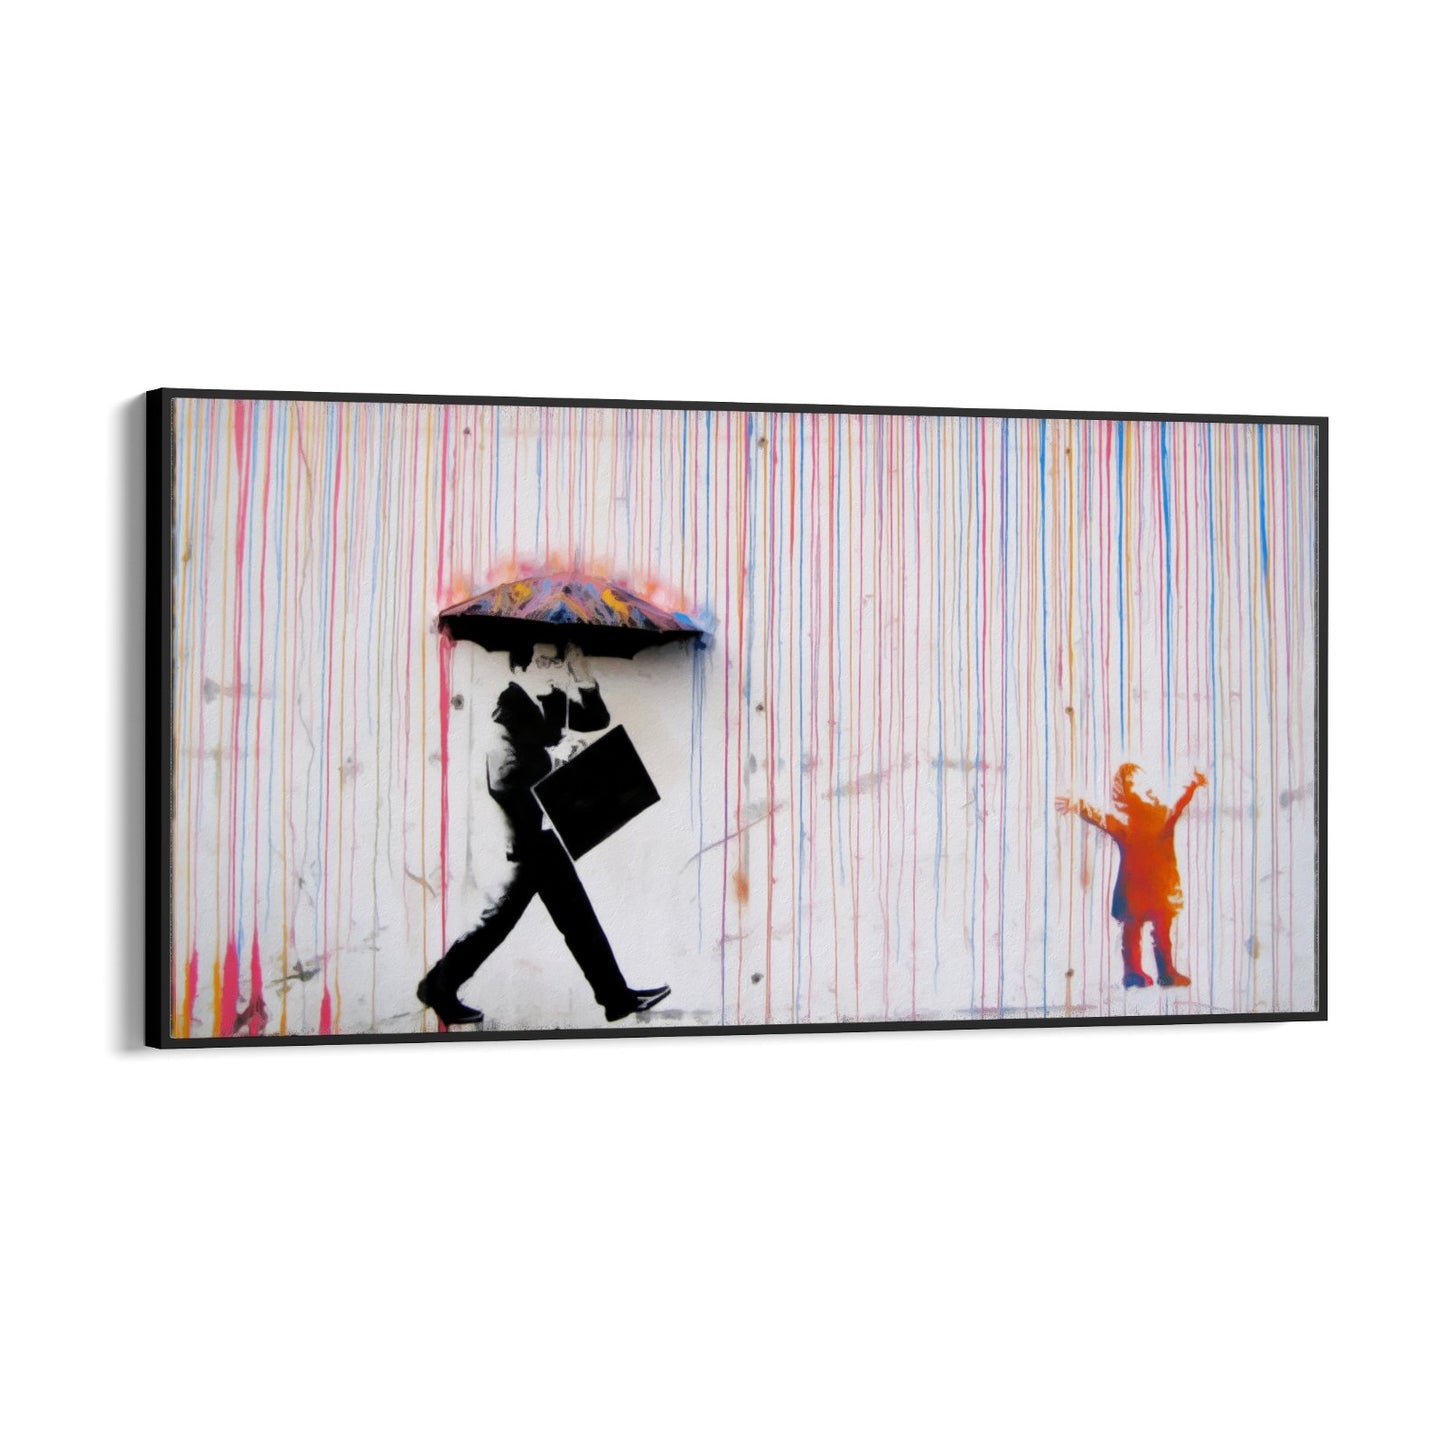 Farbiger Regen, Banksy